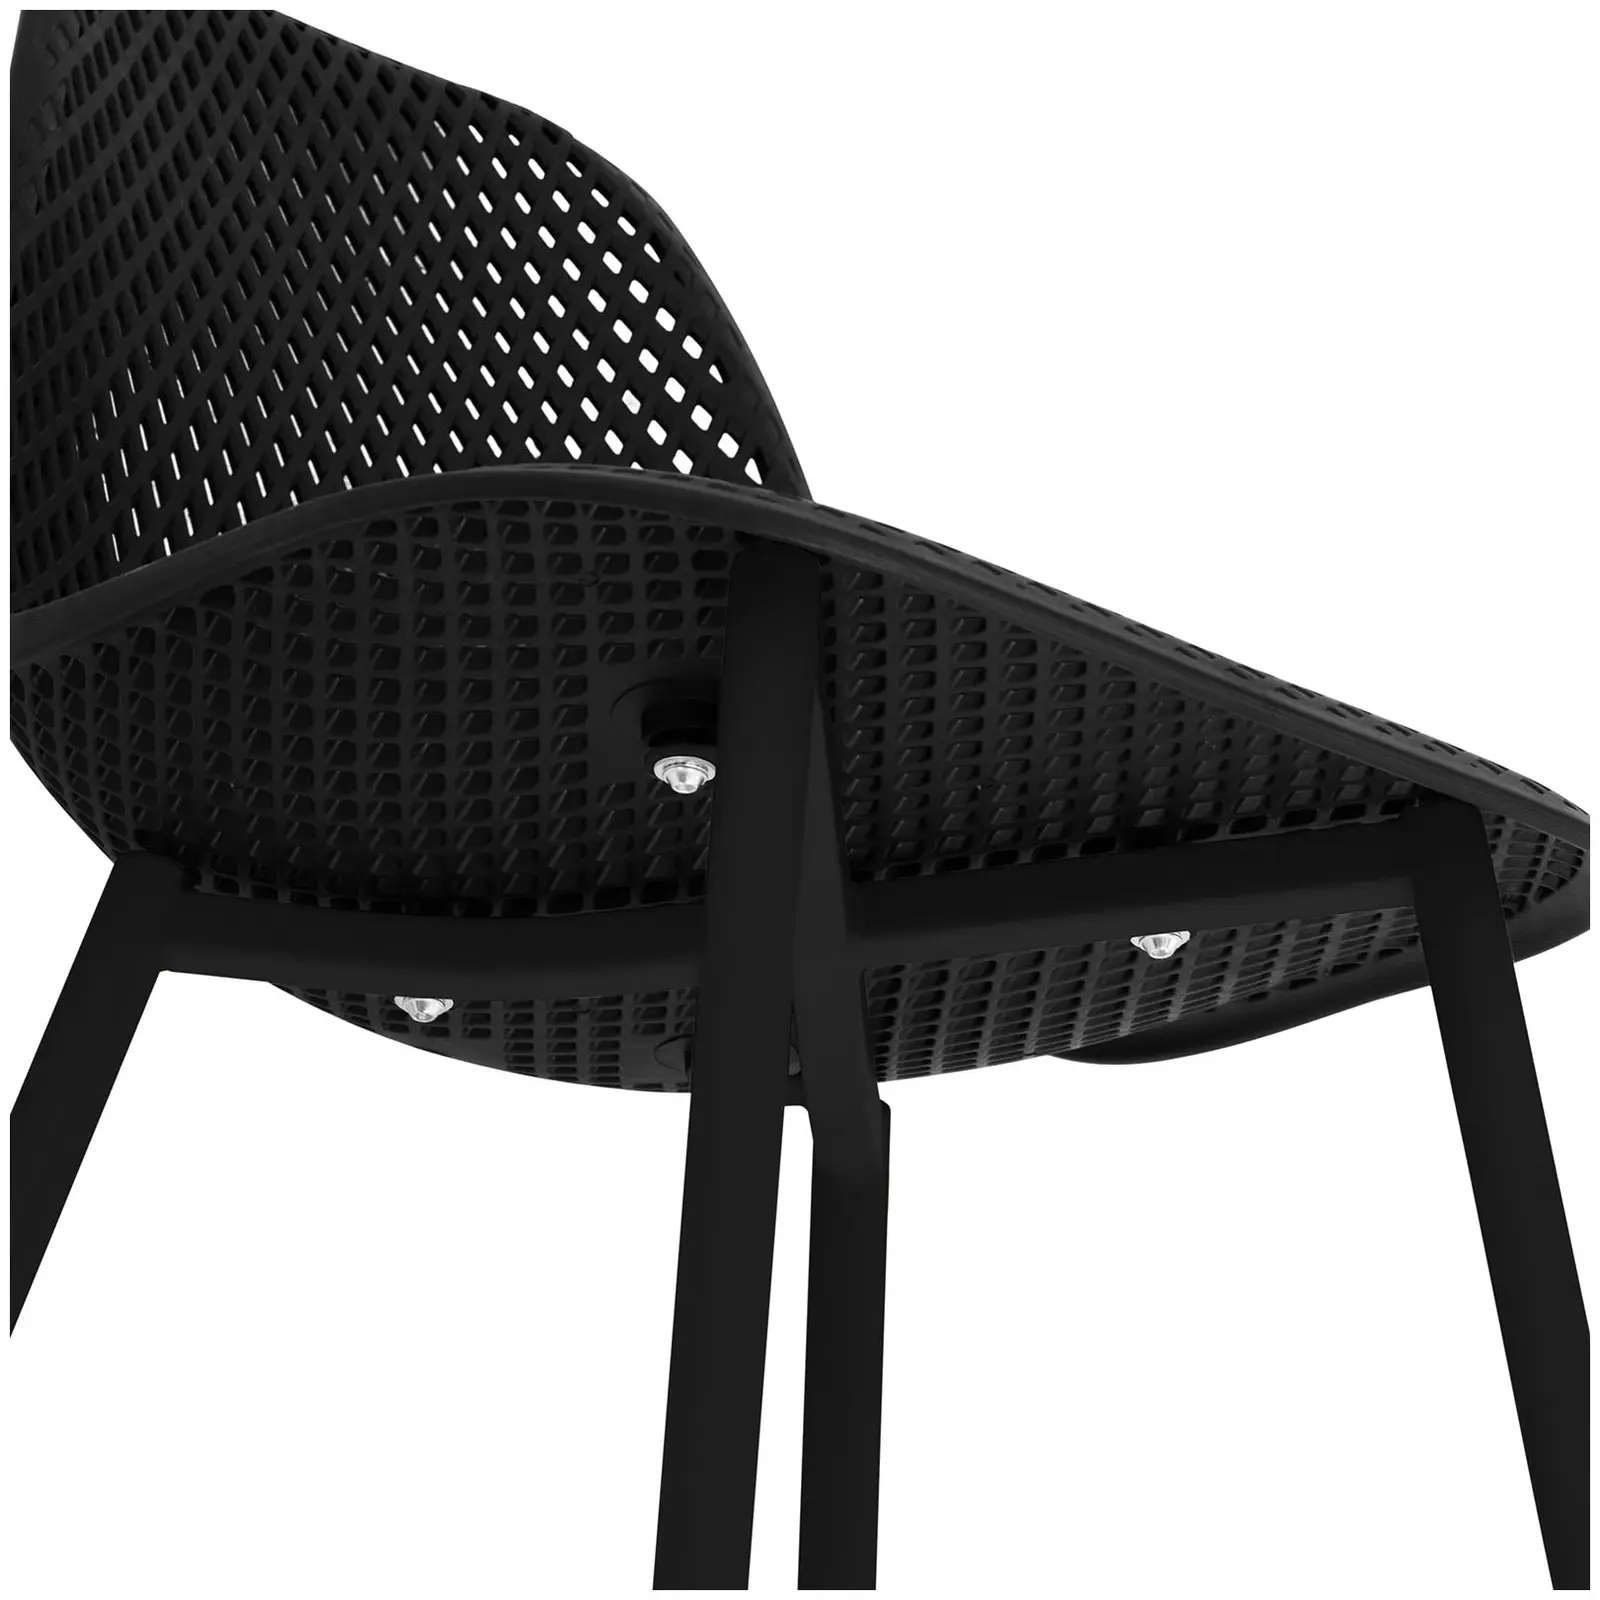 Chaise - Lot de 4 - 150 kg max. - Surface d'assise de 52 x 46,5 cm - Coloris noir - 4